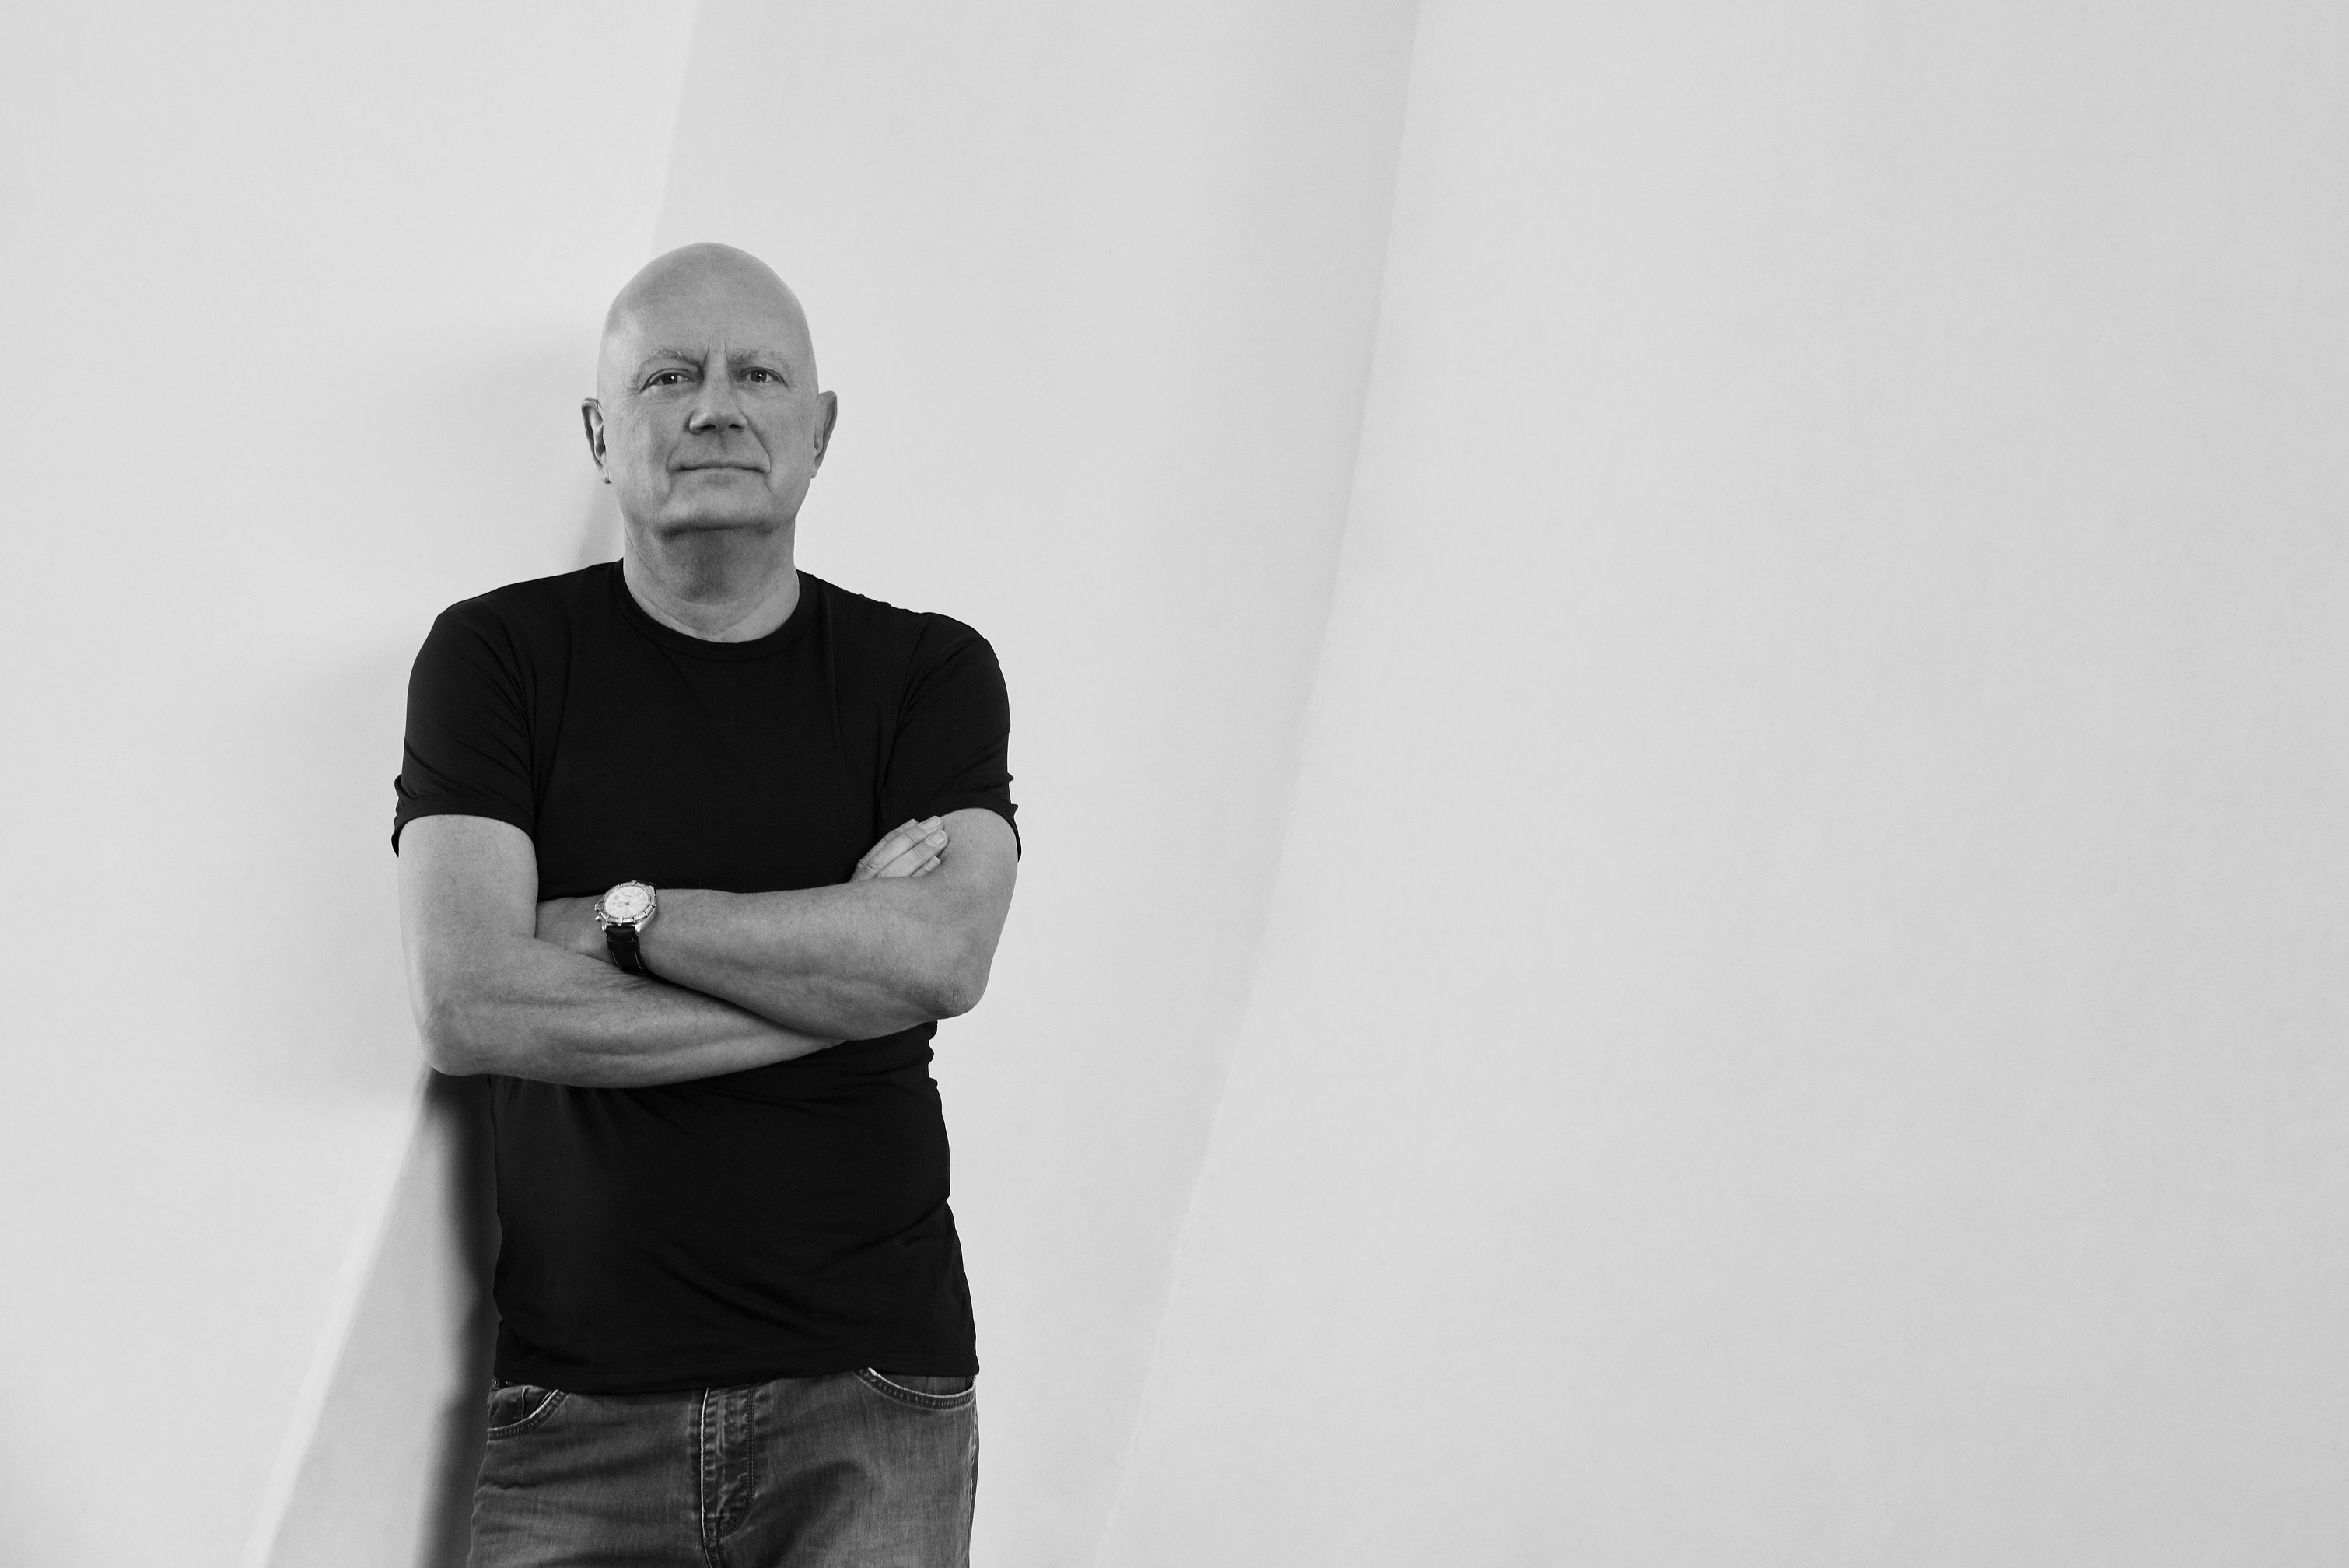 Der Designer Morten Georgsen in Schwarz-Weiß